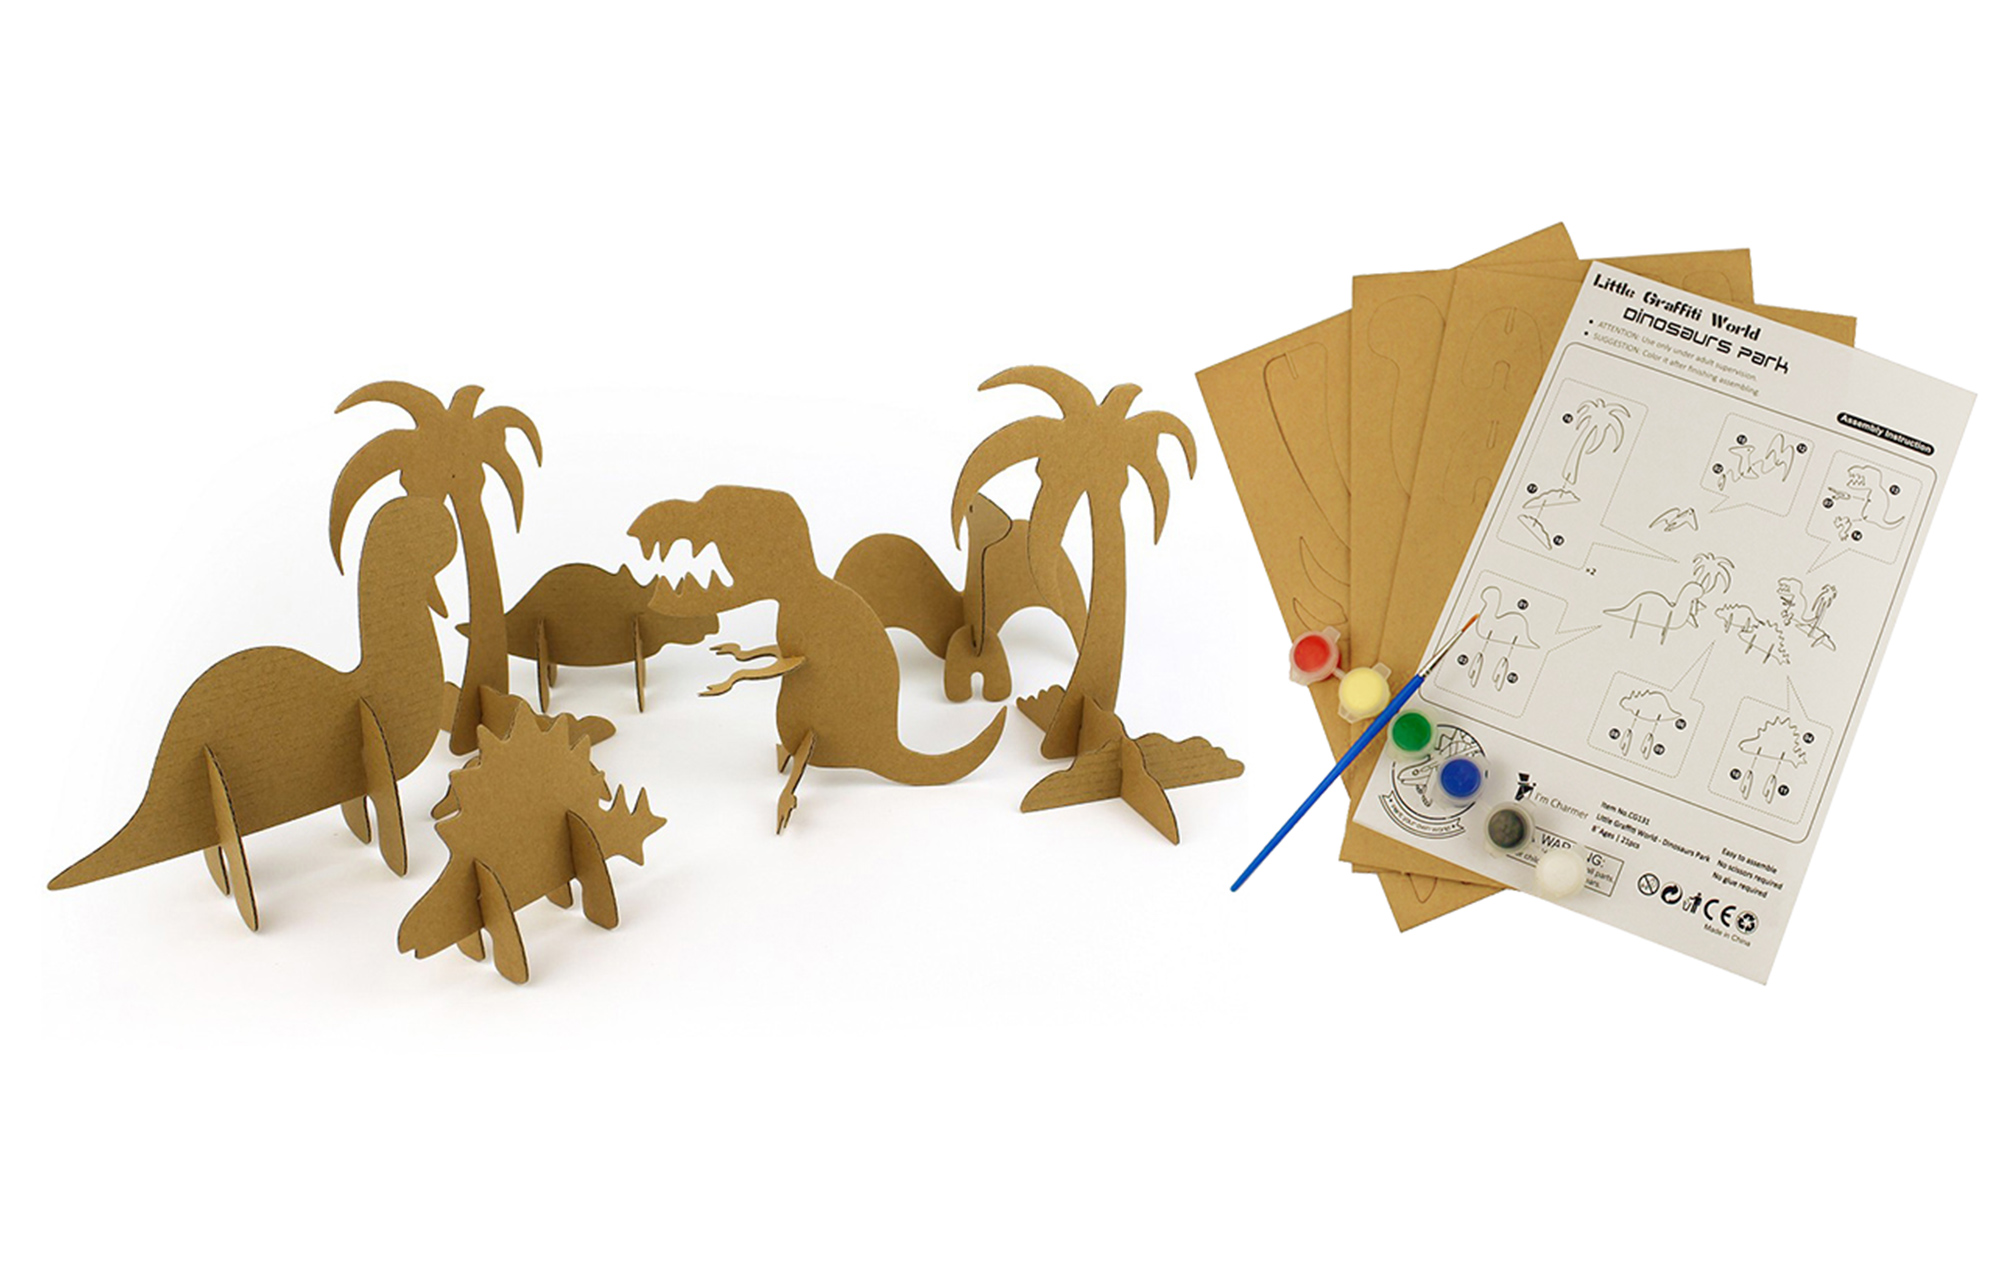 Dinosaur series 3D Puzzle Paper Model Rau cov me nyuam sib dhos thiab doodling CG131 (2)